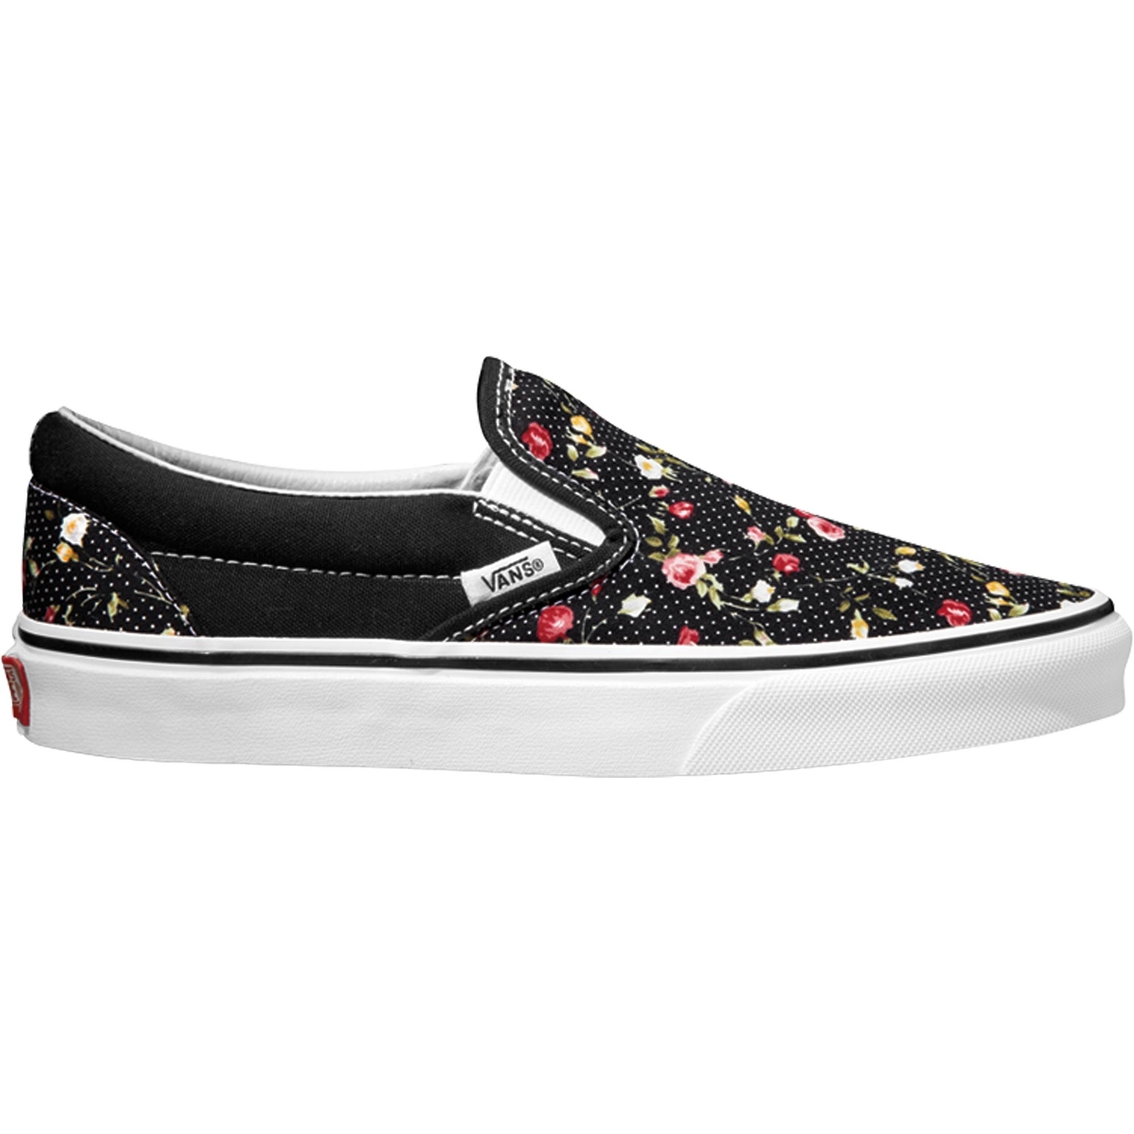 Vans Women's Slip-on Floral Dots Shoes 